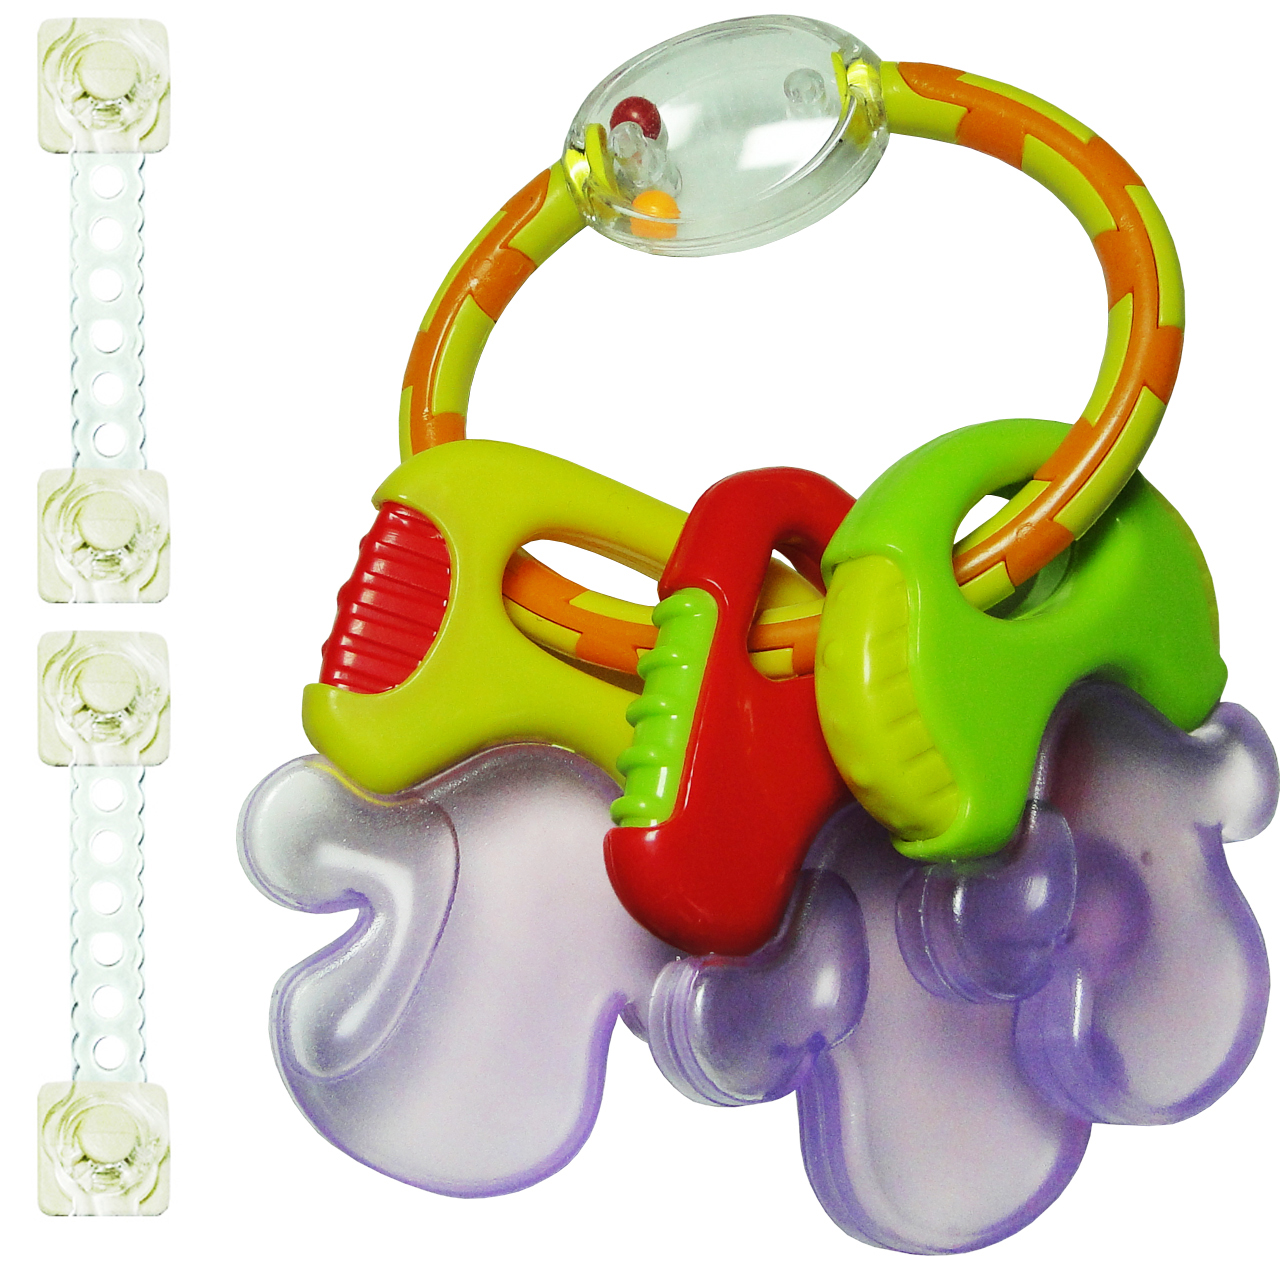 دندان گیر و جغجغه مدل Toys Word همراه 2 عدد قفل کابینت مدل ایمن ساز